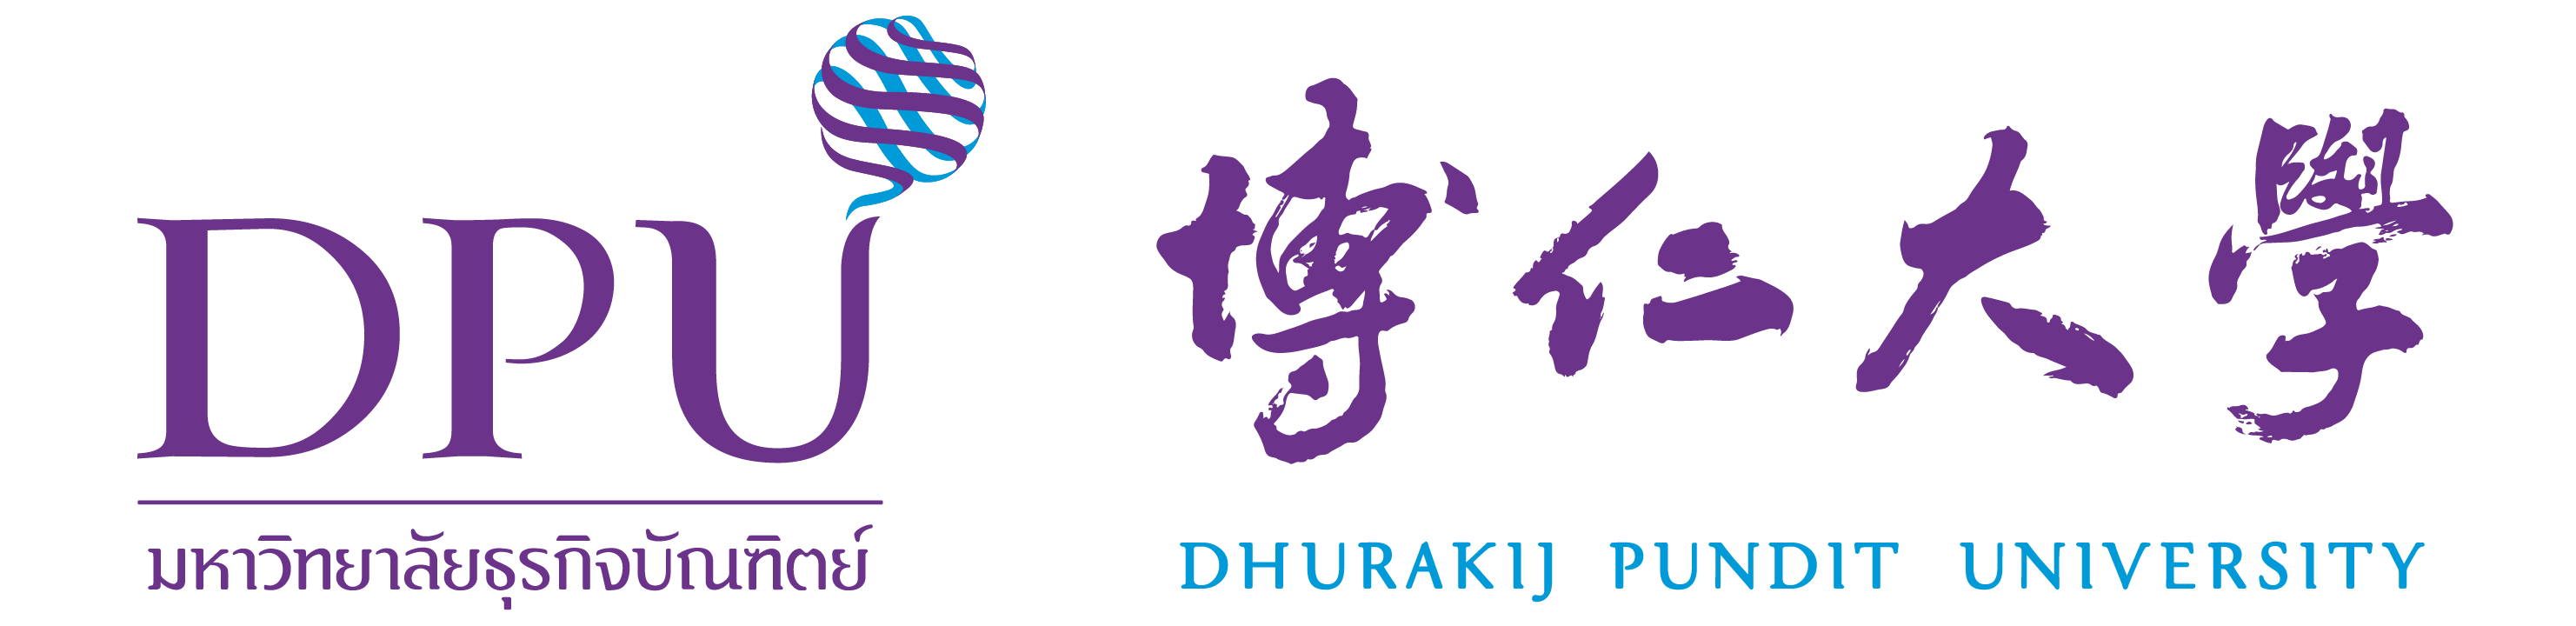 dpu_logo